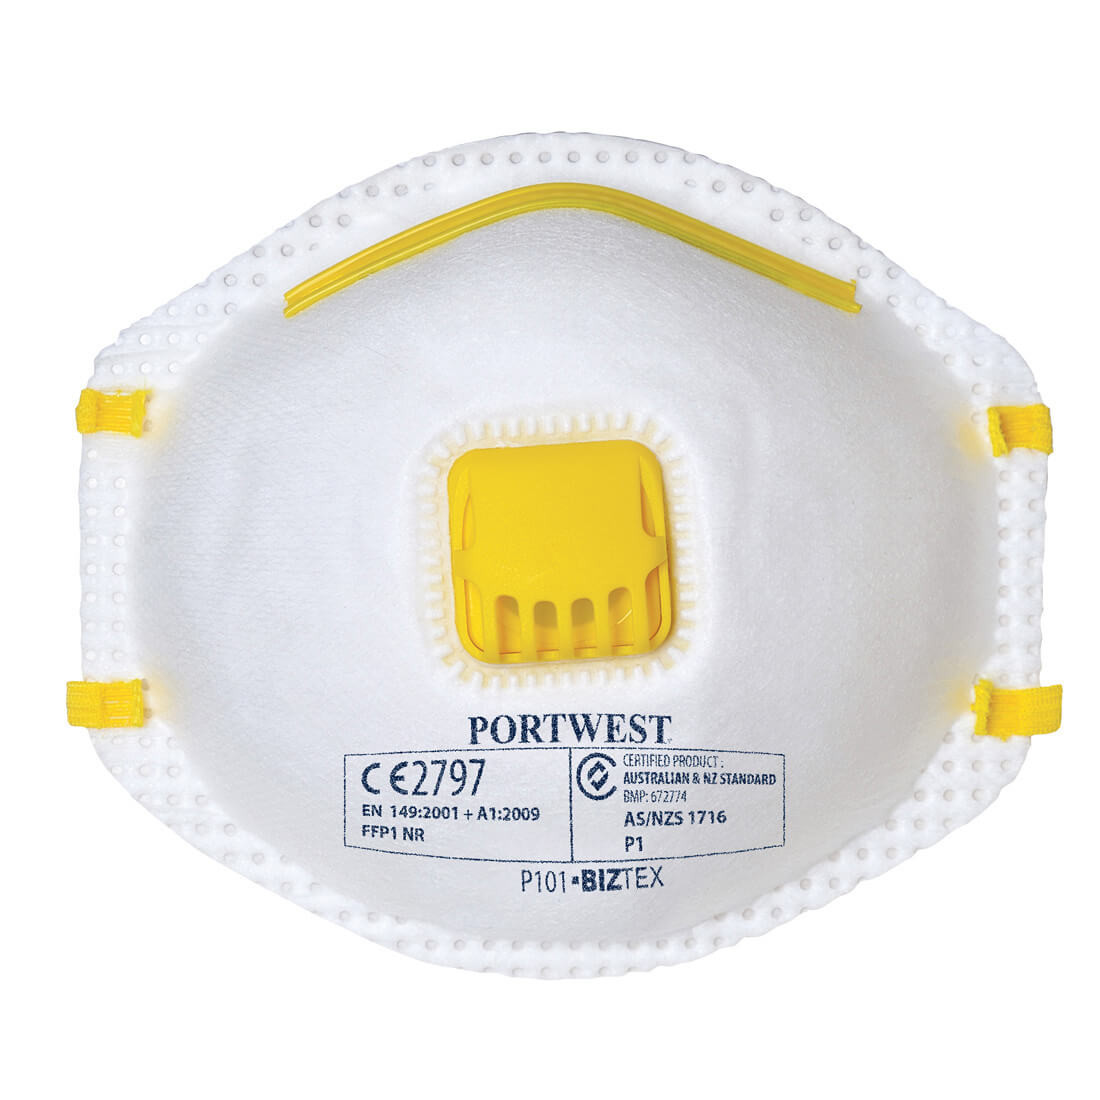 Masque poussières à valve FFP1 - Les équipements de protection individuelle